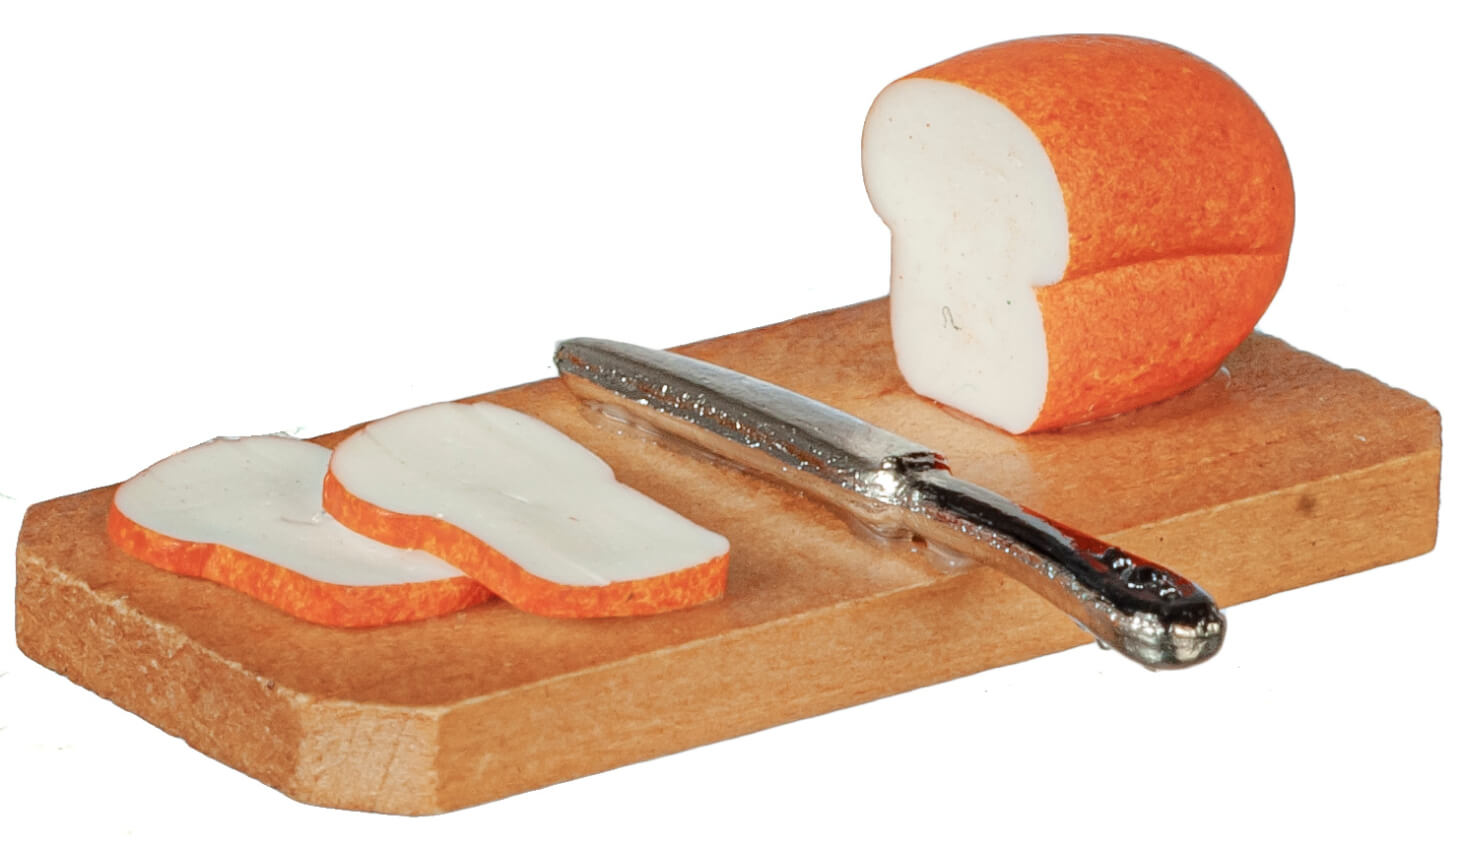 Bread & Knife Set